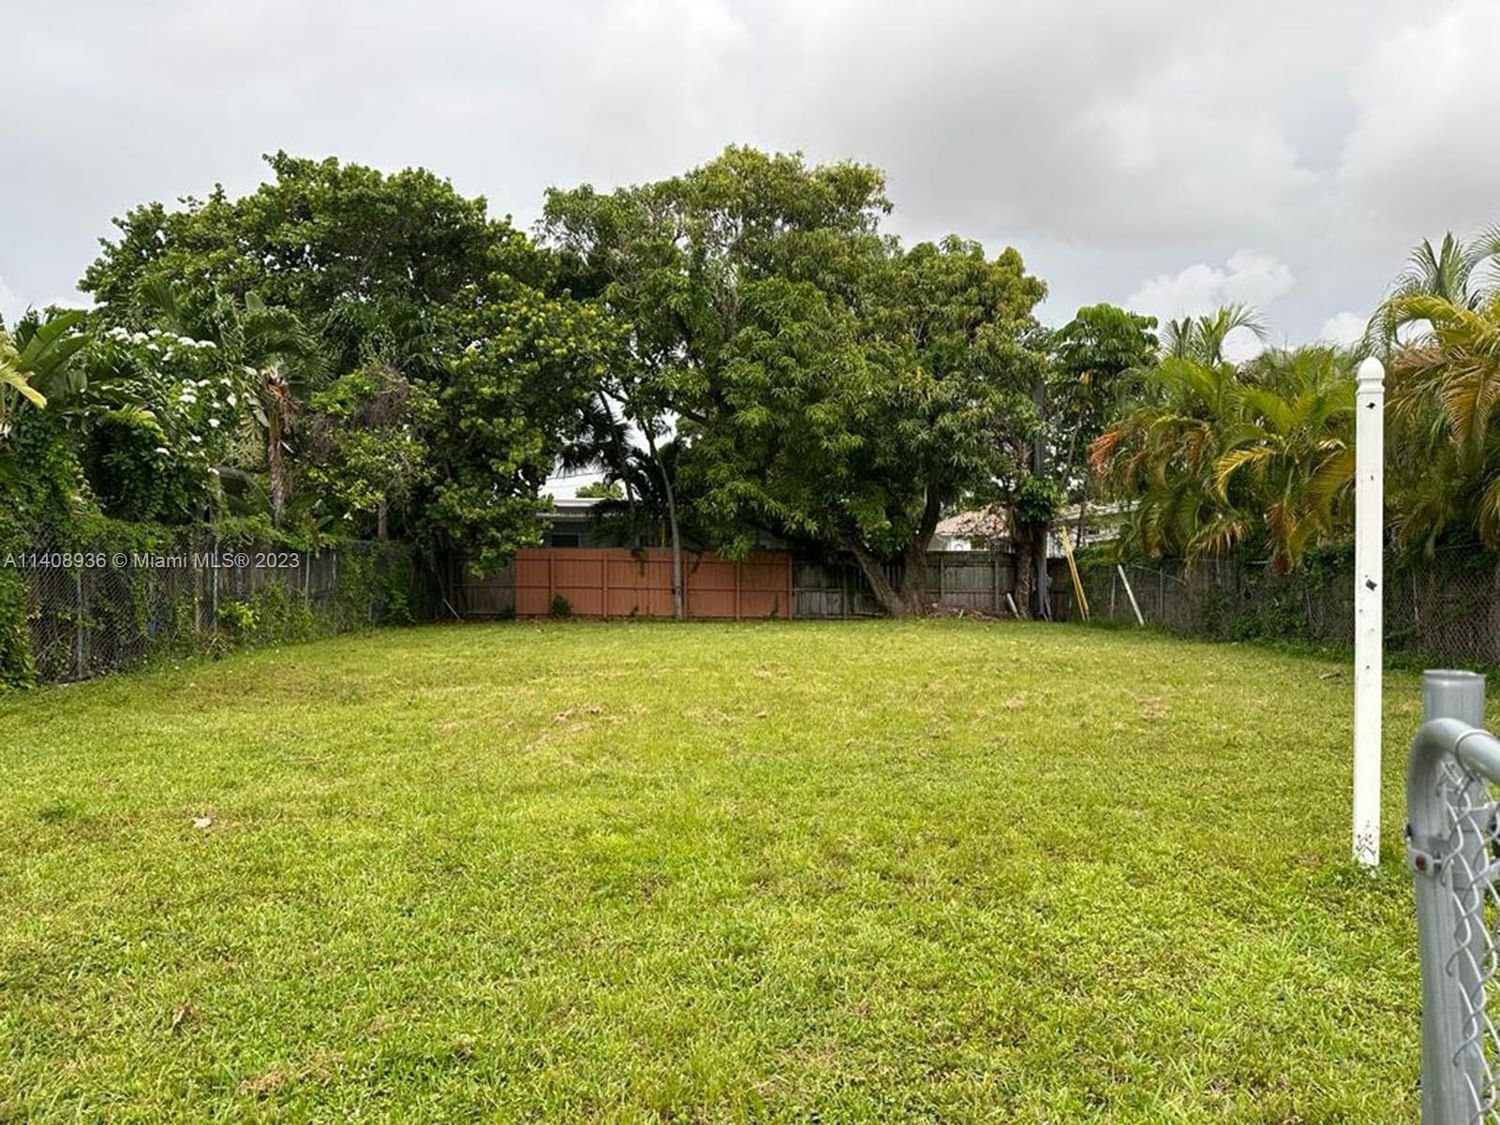 Real estate property located at 8020 Bayshore Drive, Miami-Dade County, Miami, FL